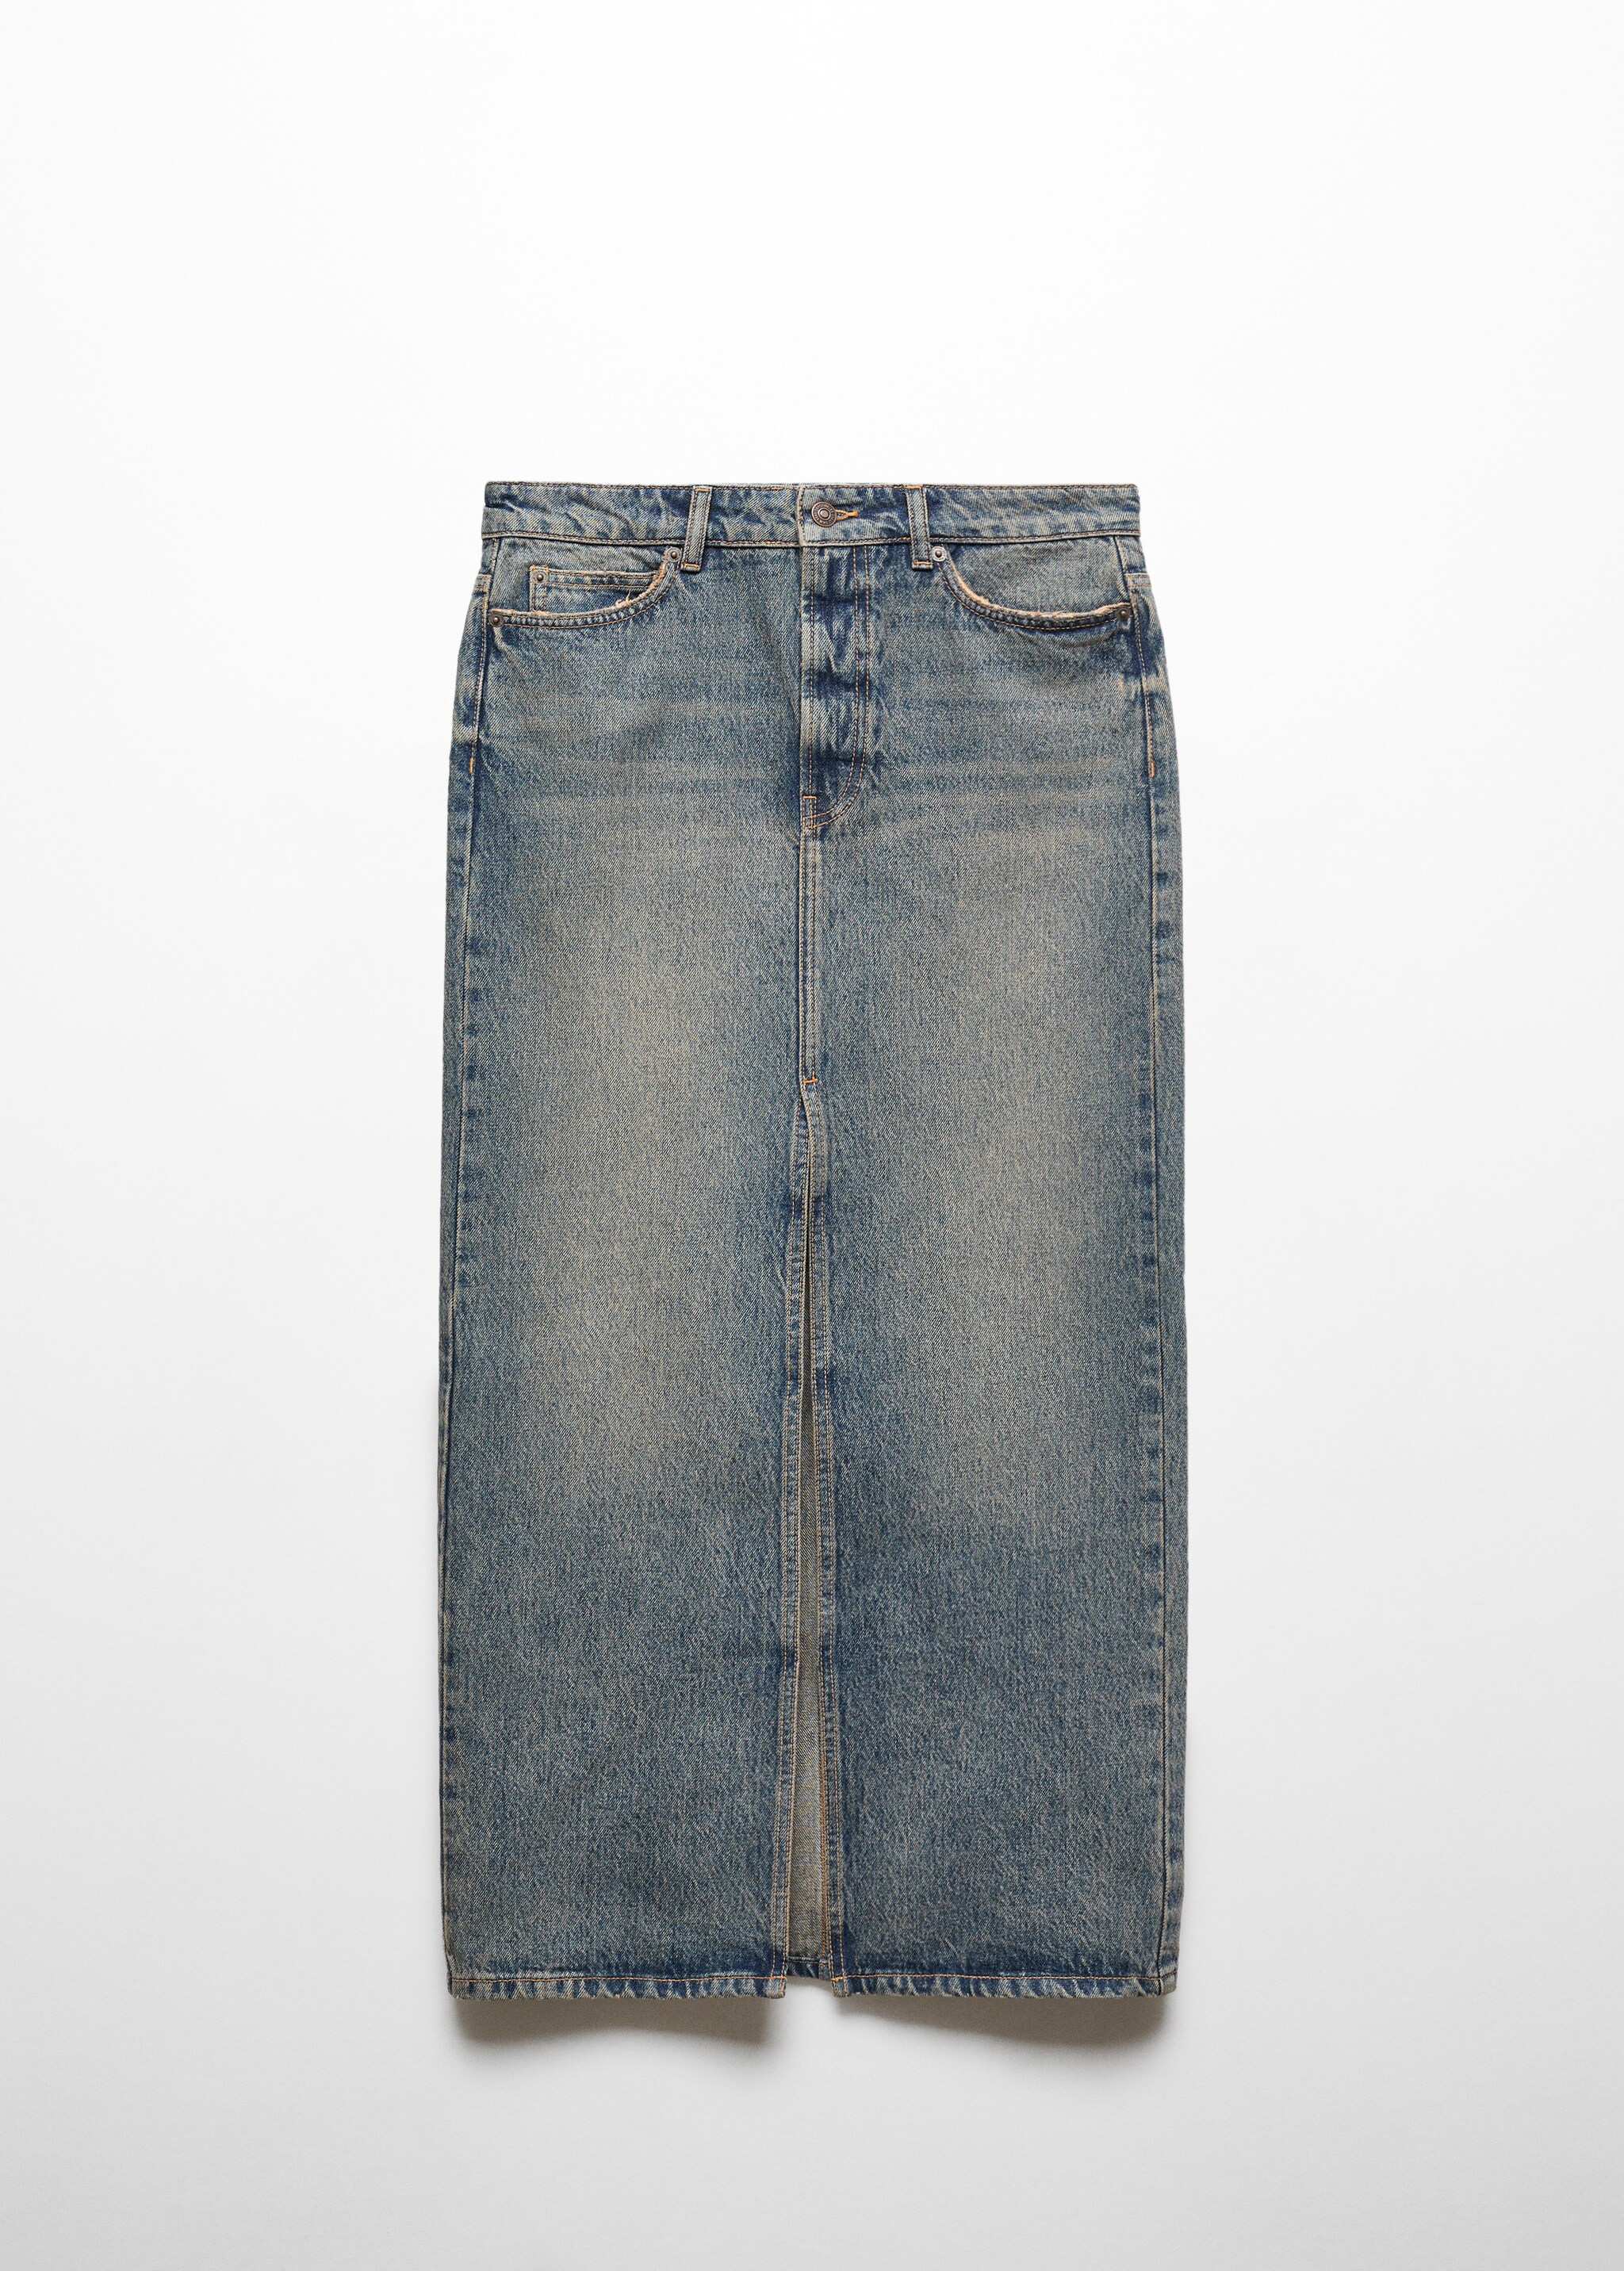 Gonna lunga jeans - Articolo senza modello